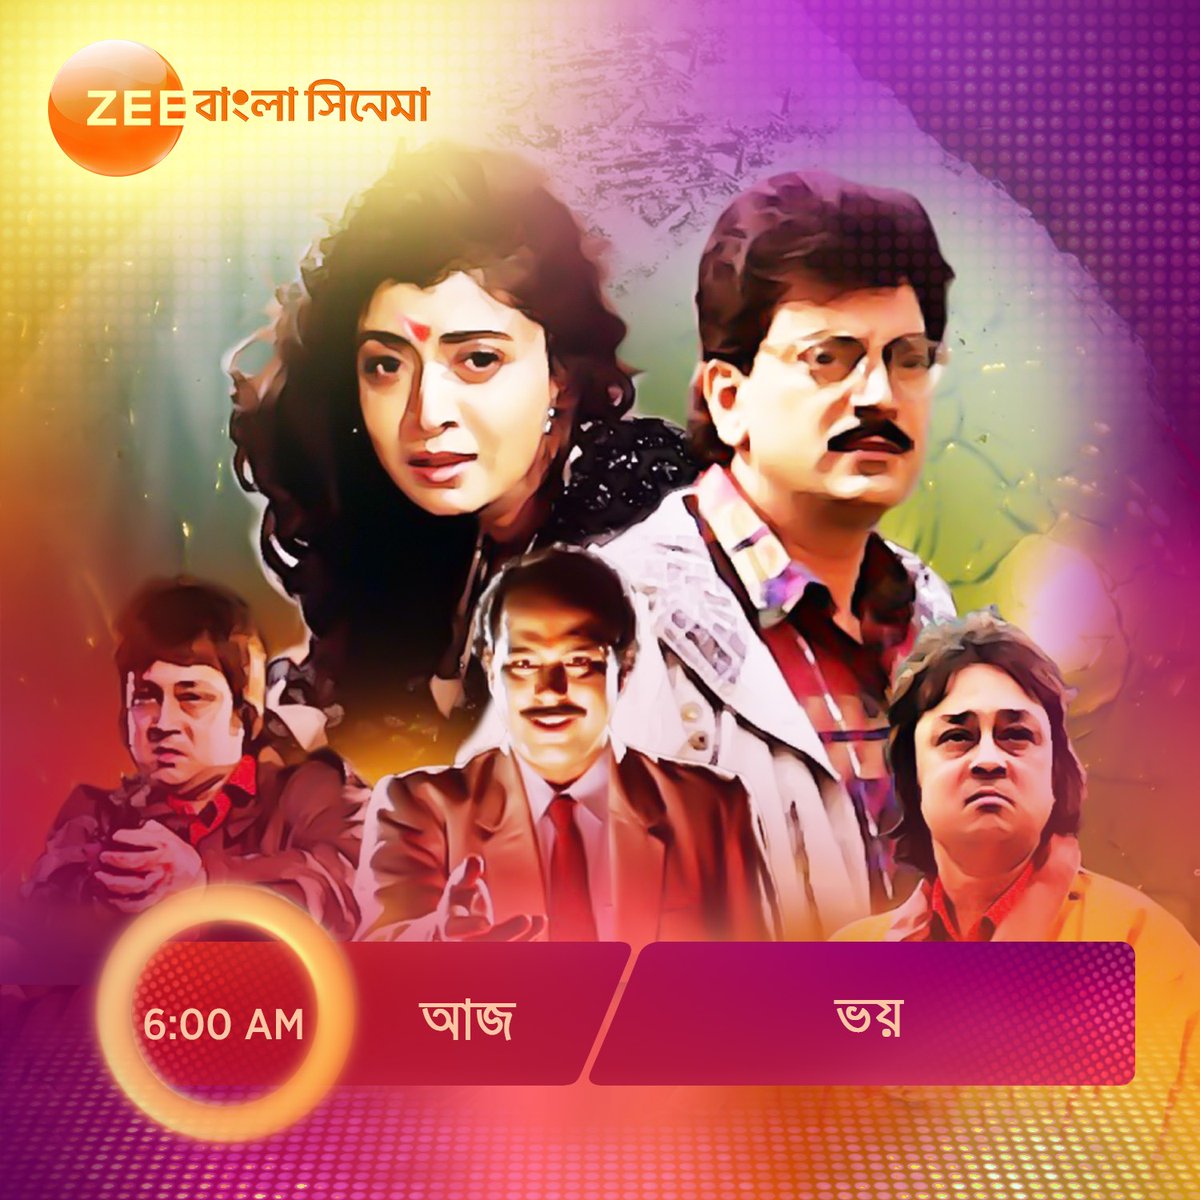 আজ #SundayMorningShow -এ দেখুন ছায়াছবি 'ভয়' 6 AM, শুধুমাত্র #ZeeBanglaCinema -এ।

#Bhoy #HokNaEktuMagic